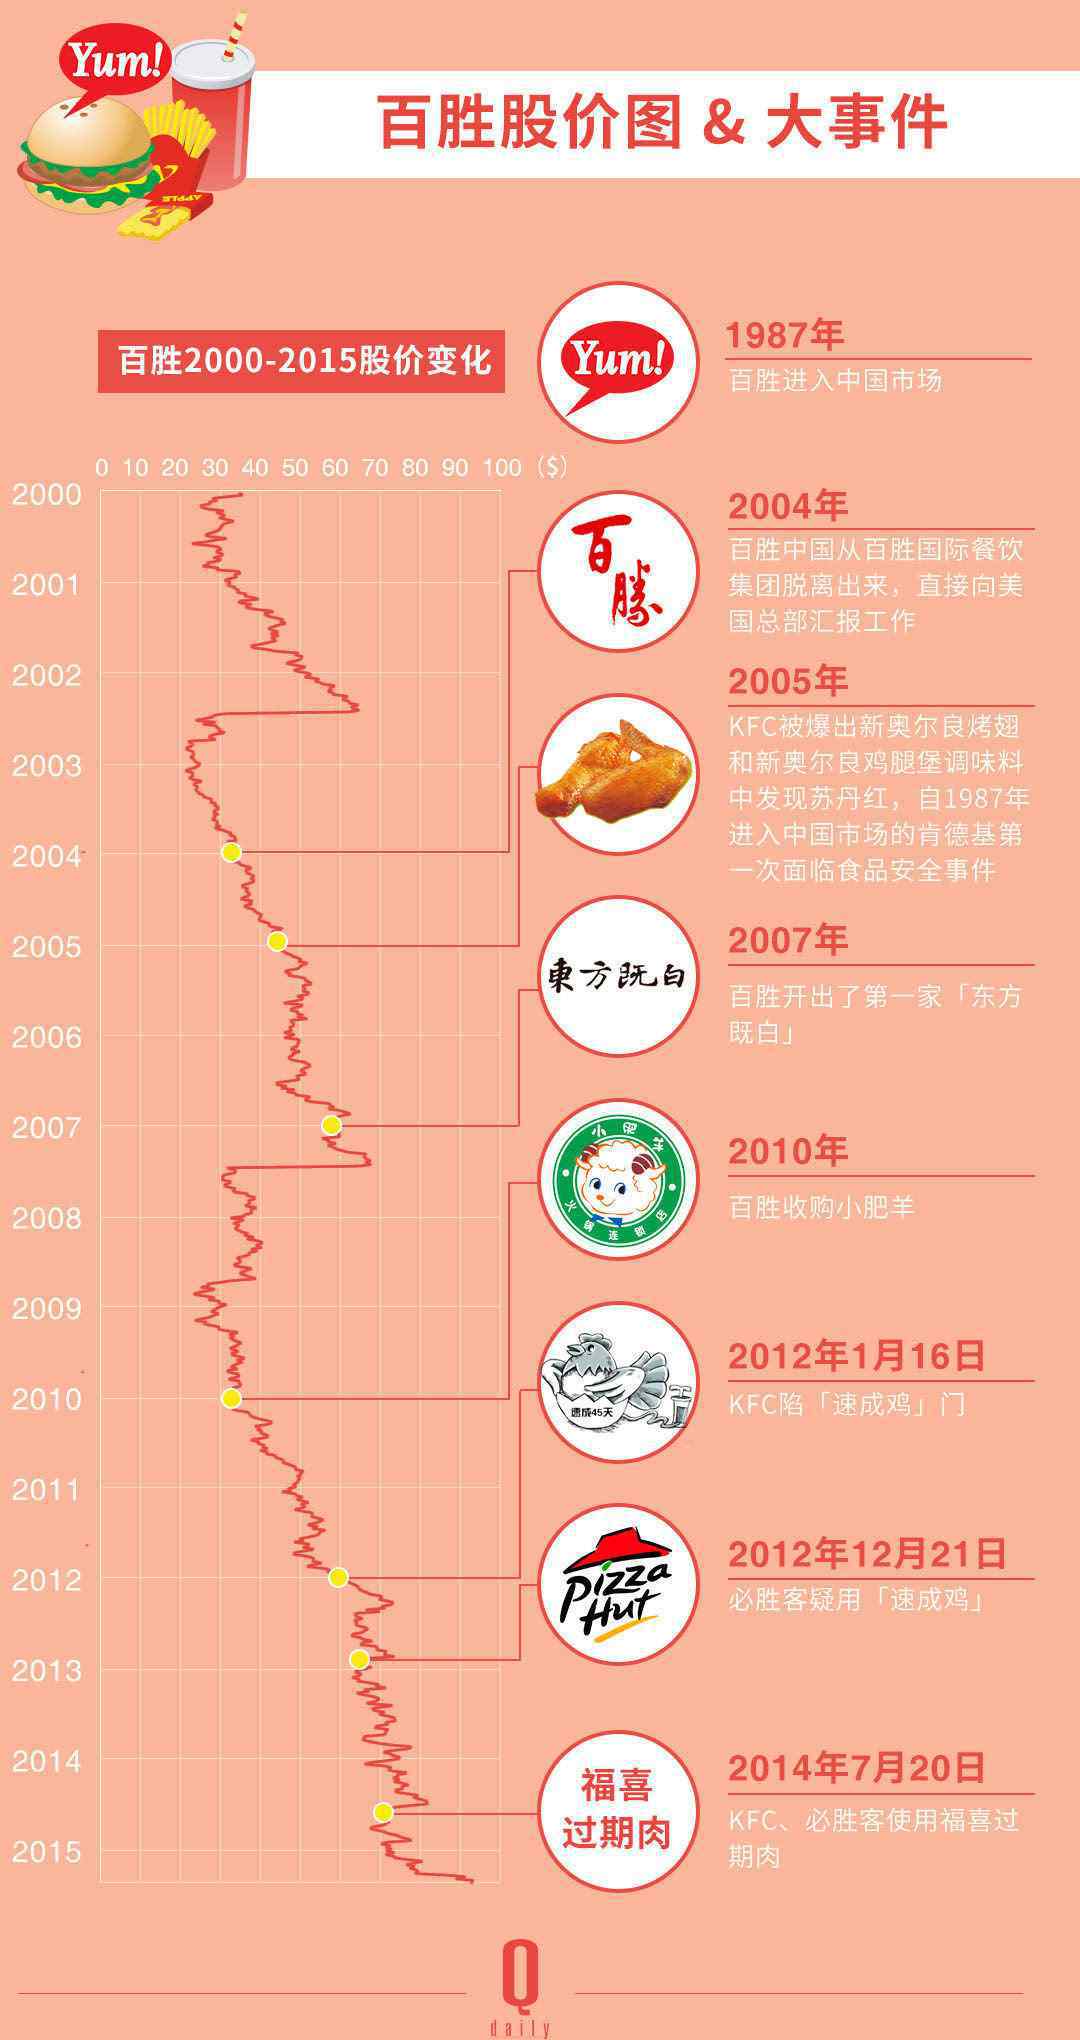 百胜集团 28年后 拥有肯德基 必胜客的百胜集团 让百胜中国成为了一个独立的公司